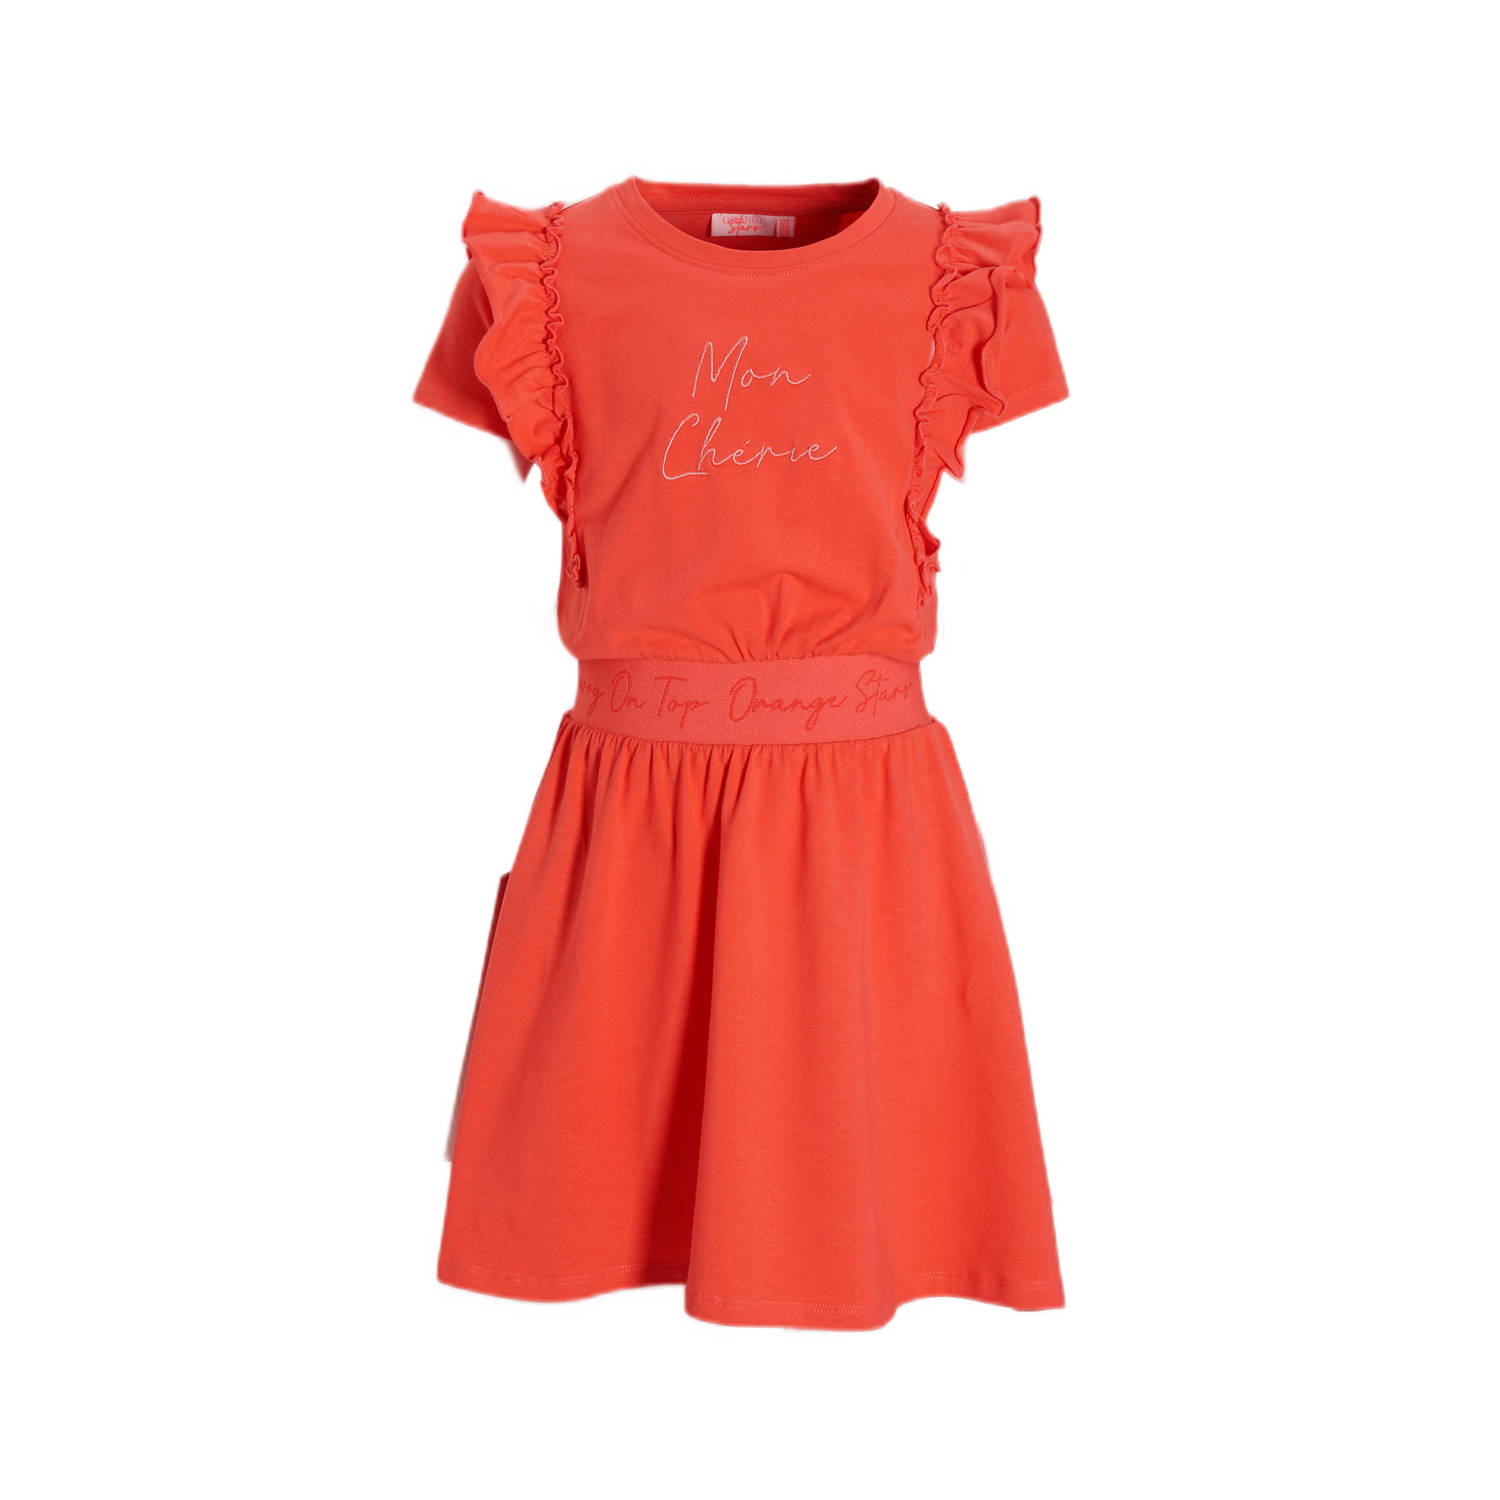 Orange Stars jurk Petronella met tekstopdruk koraal